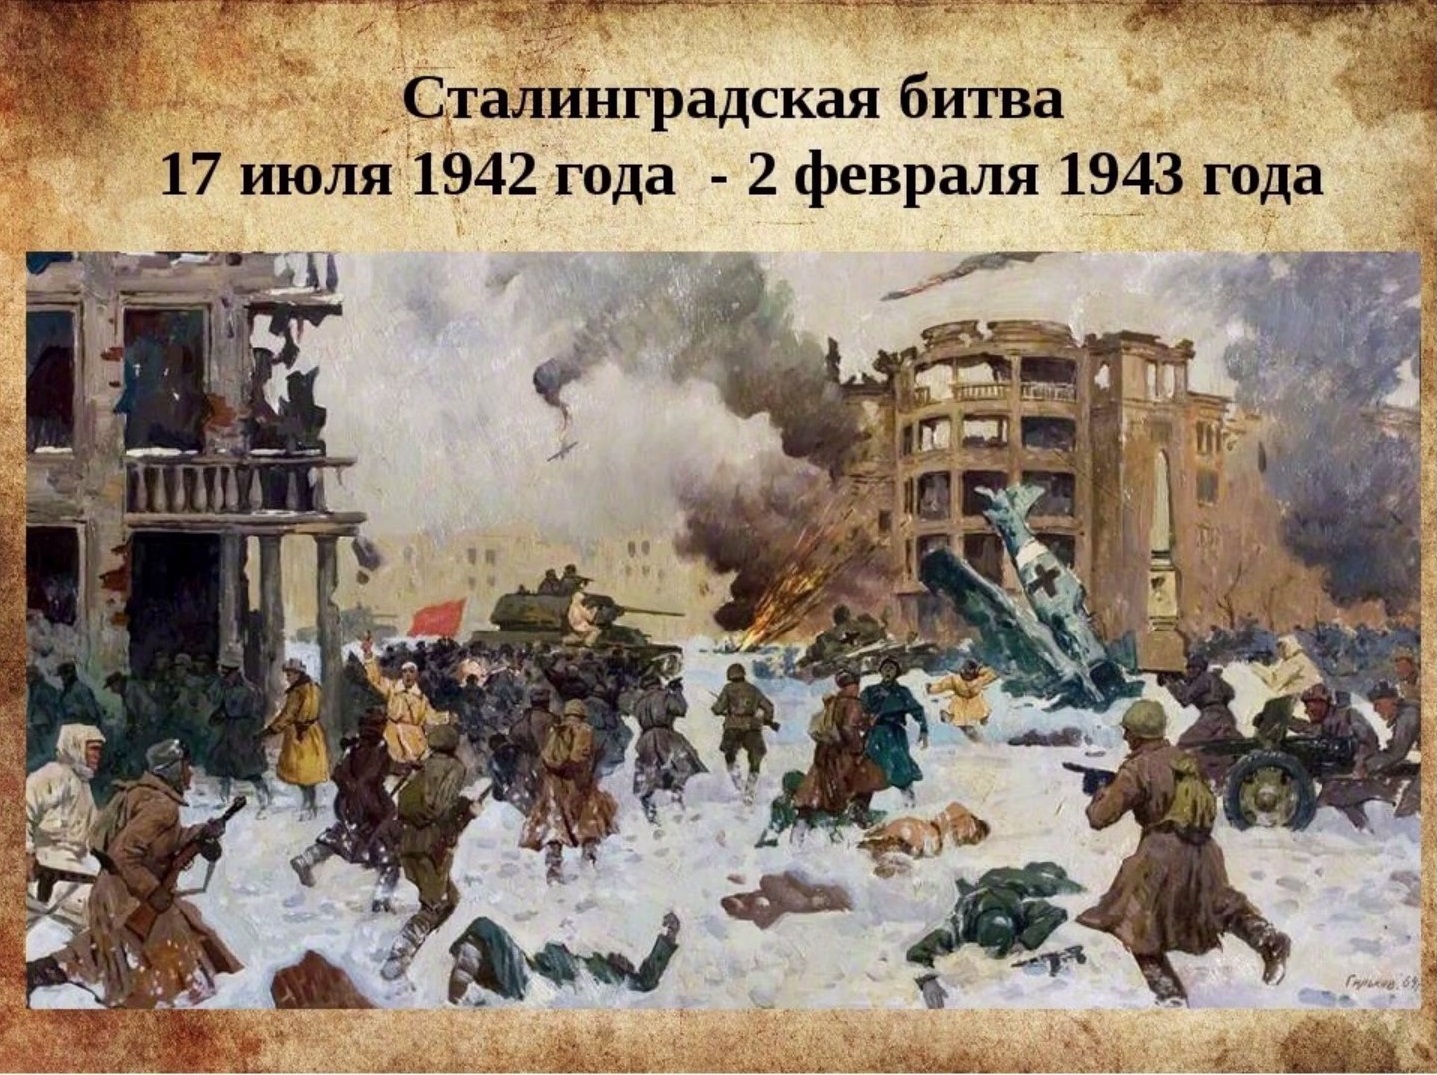 Сталинградская битва (1942 - 1943 гг.)